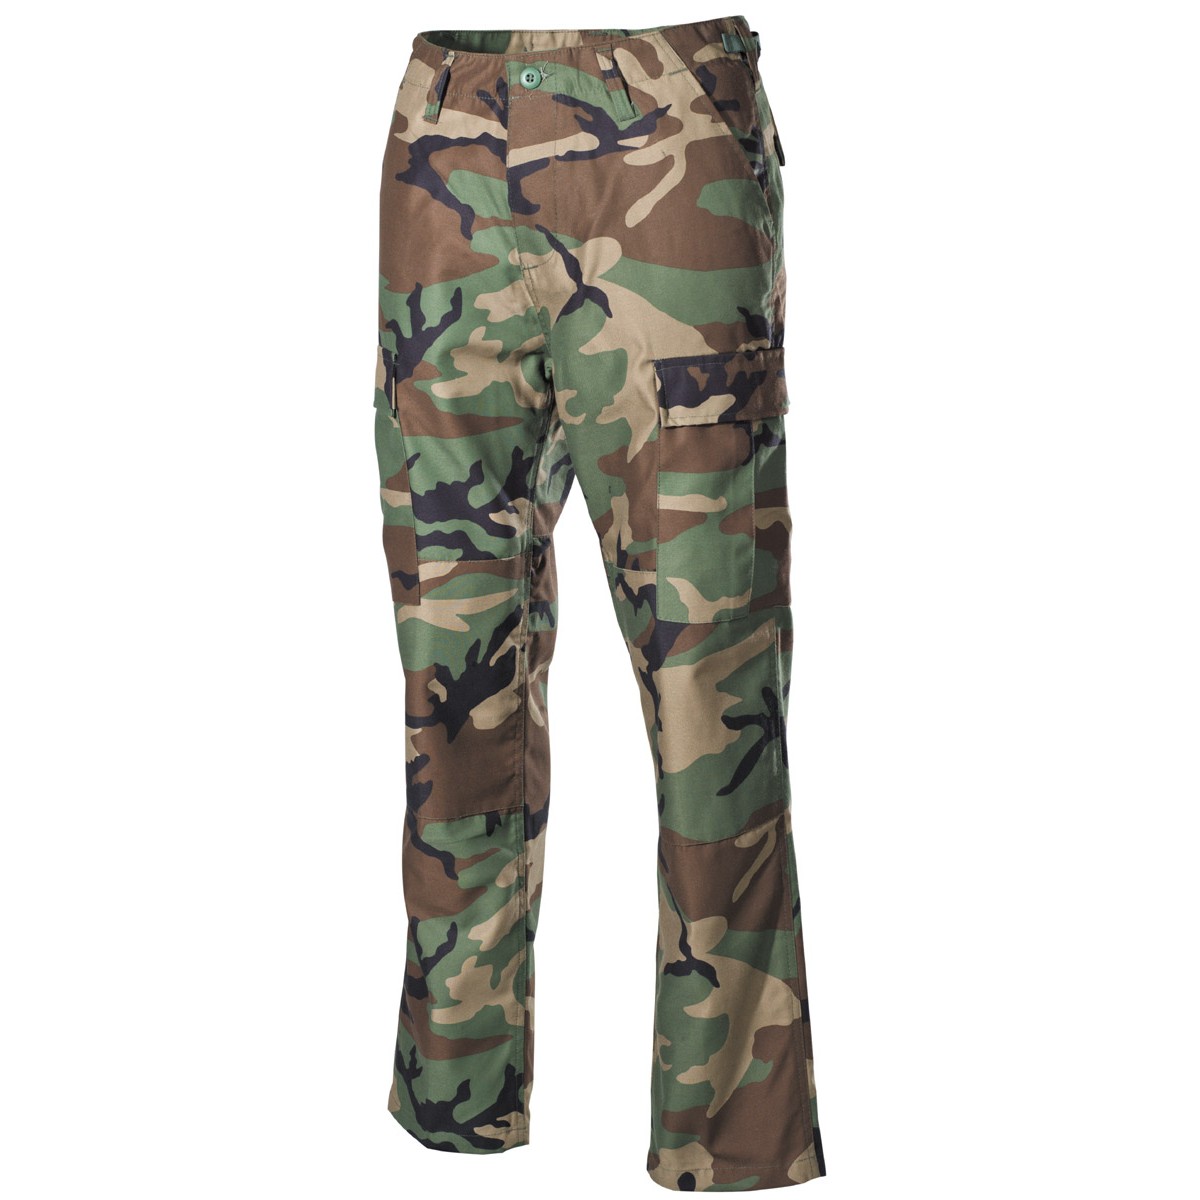 Pantaloni army BDU Combat woodland cu intarituri la genunchi si sezut (Art. 01294T)